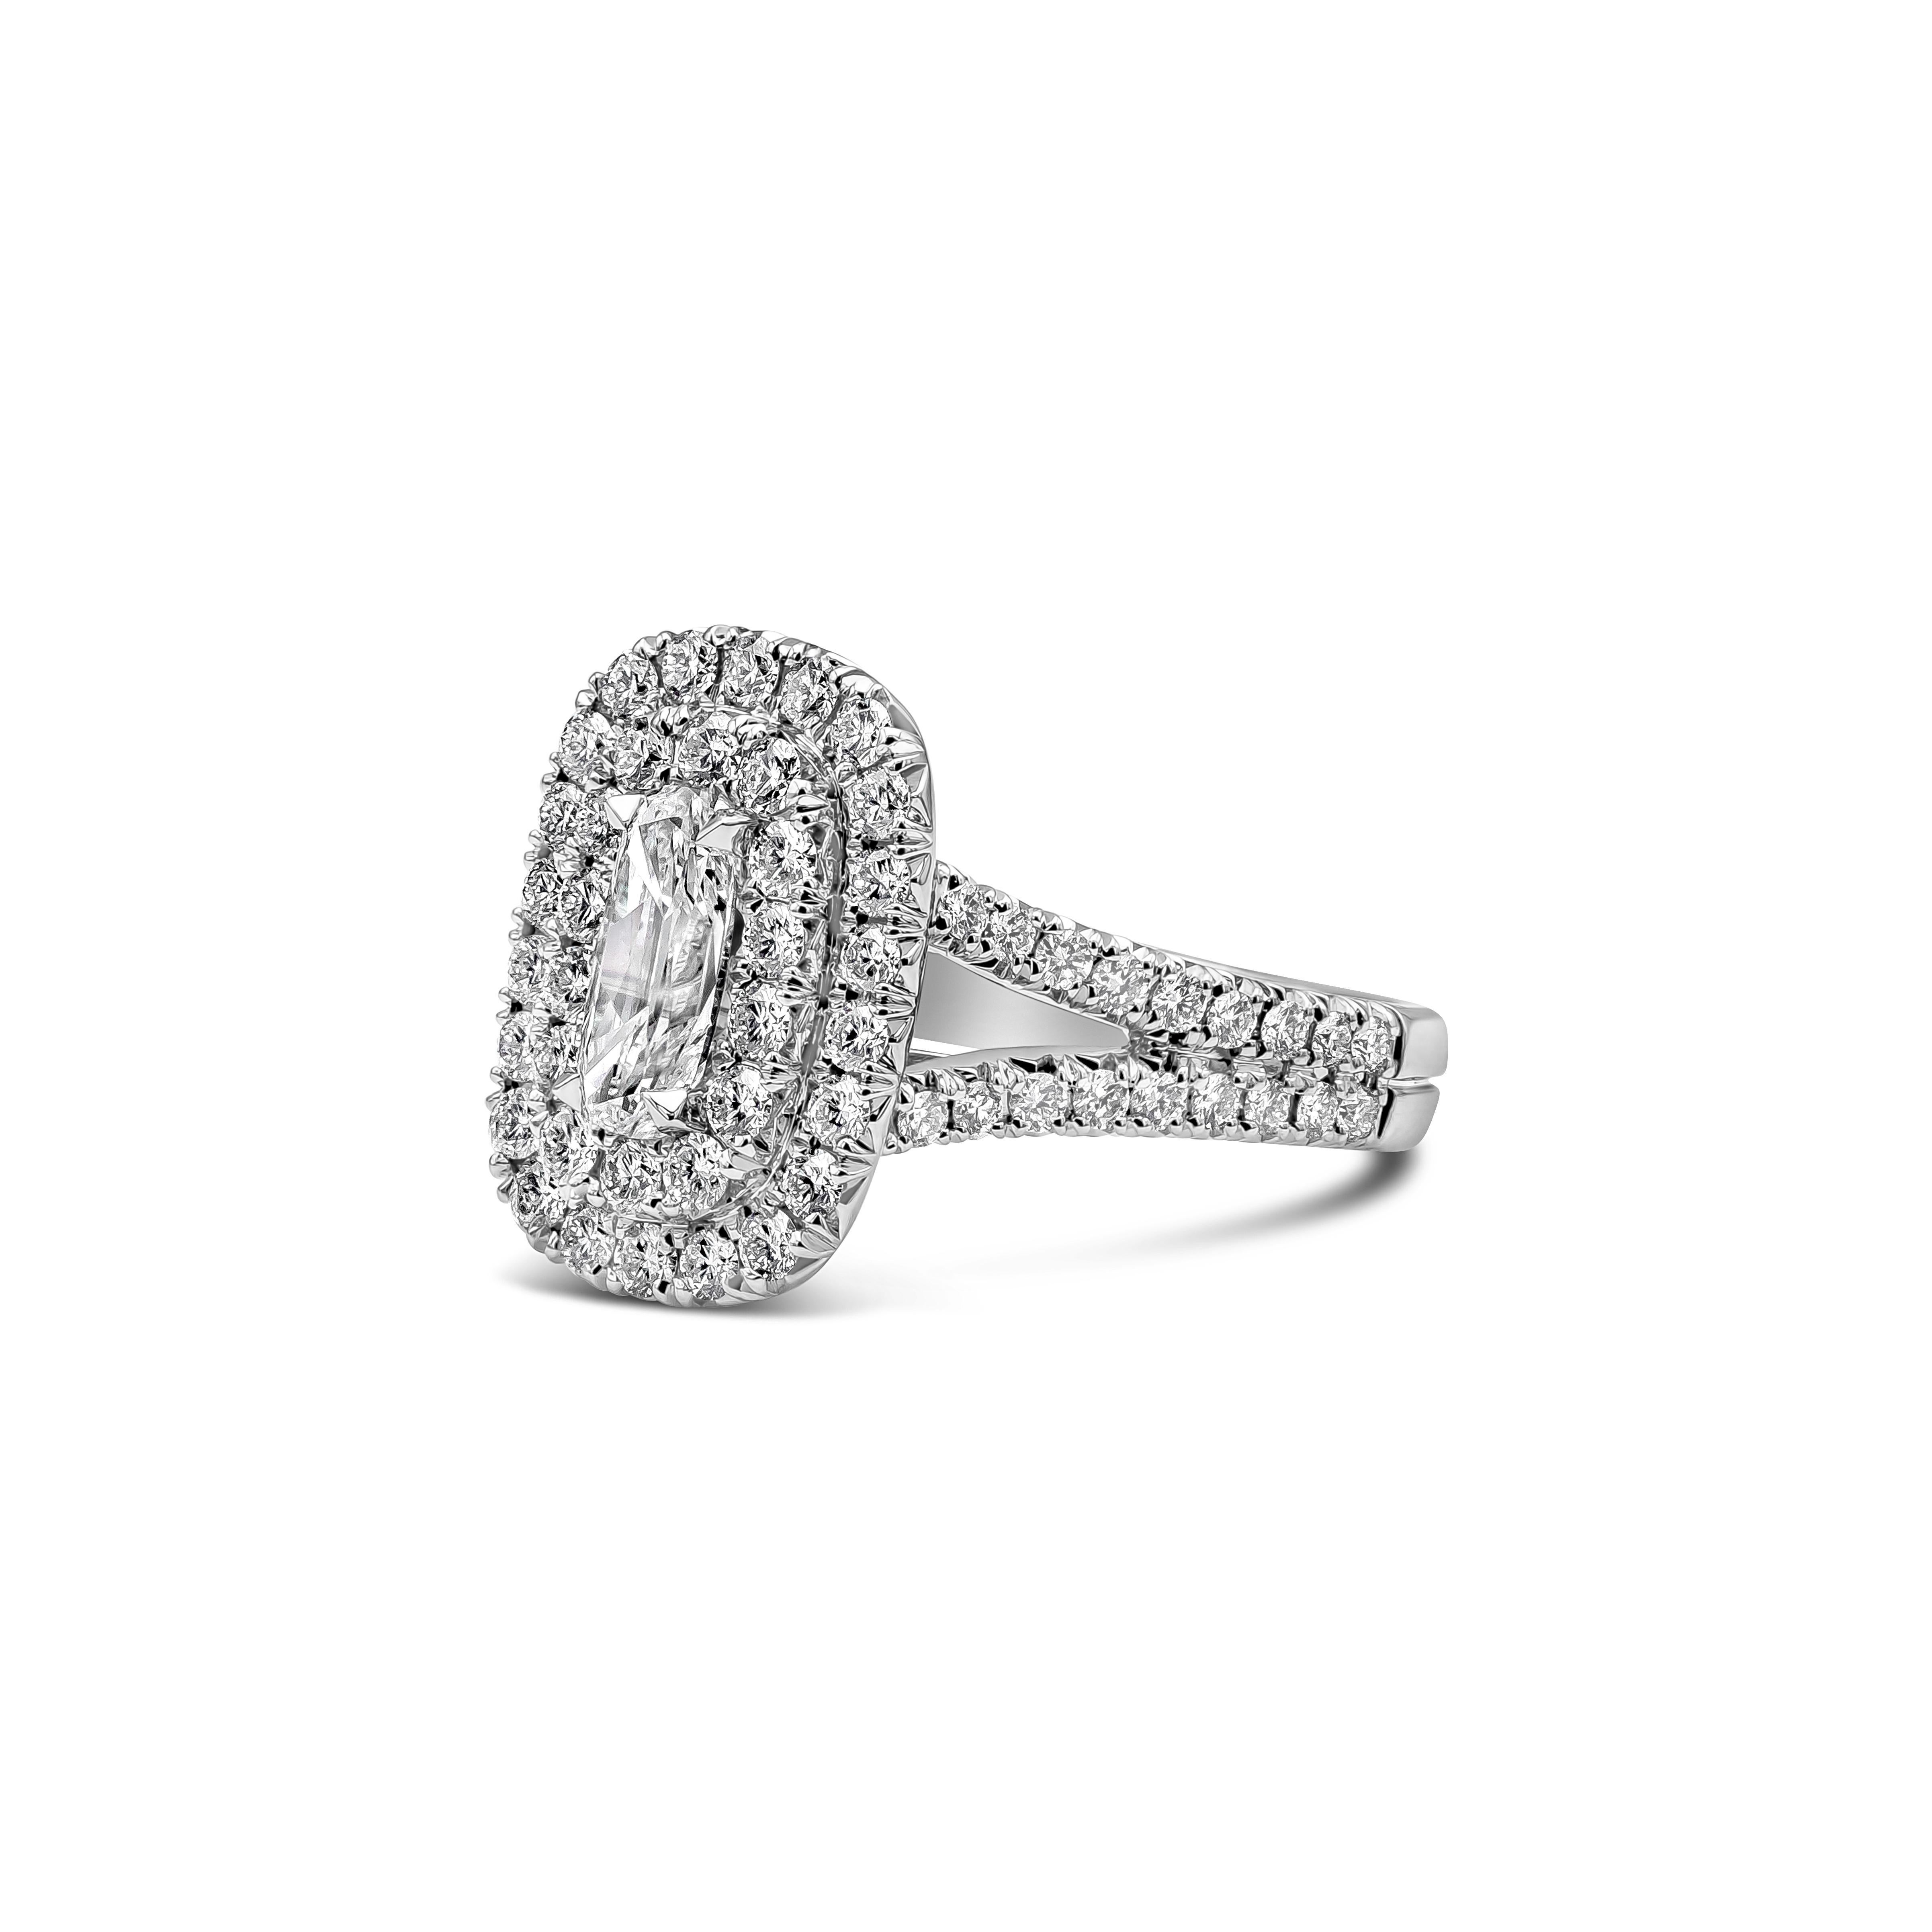 Cette magnifique bague de fiançailles en diamant allongé de taille coussin pèse 0,70 carat, de couleur F et de pureté VS1. La pierre centrale est rehaussée de 72 diamants blancs en serti double halo, pesant au total 1,19 carats, de couleur F-G et de